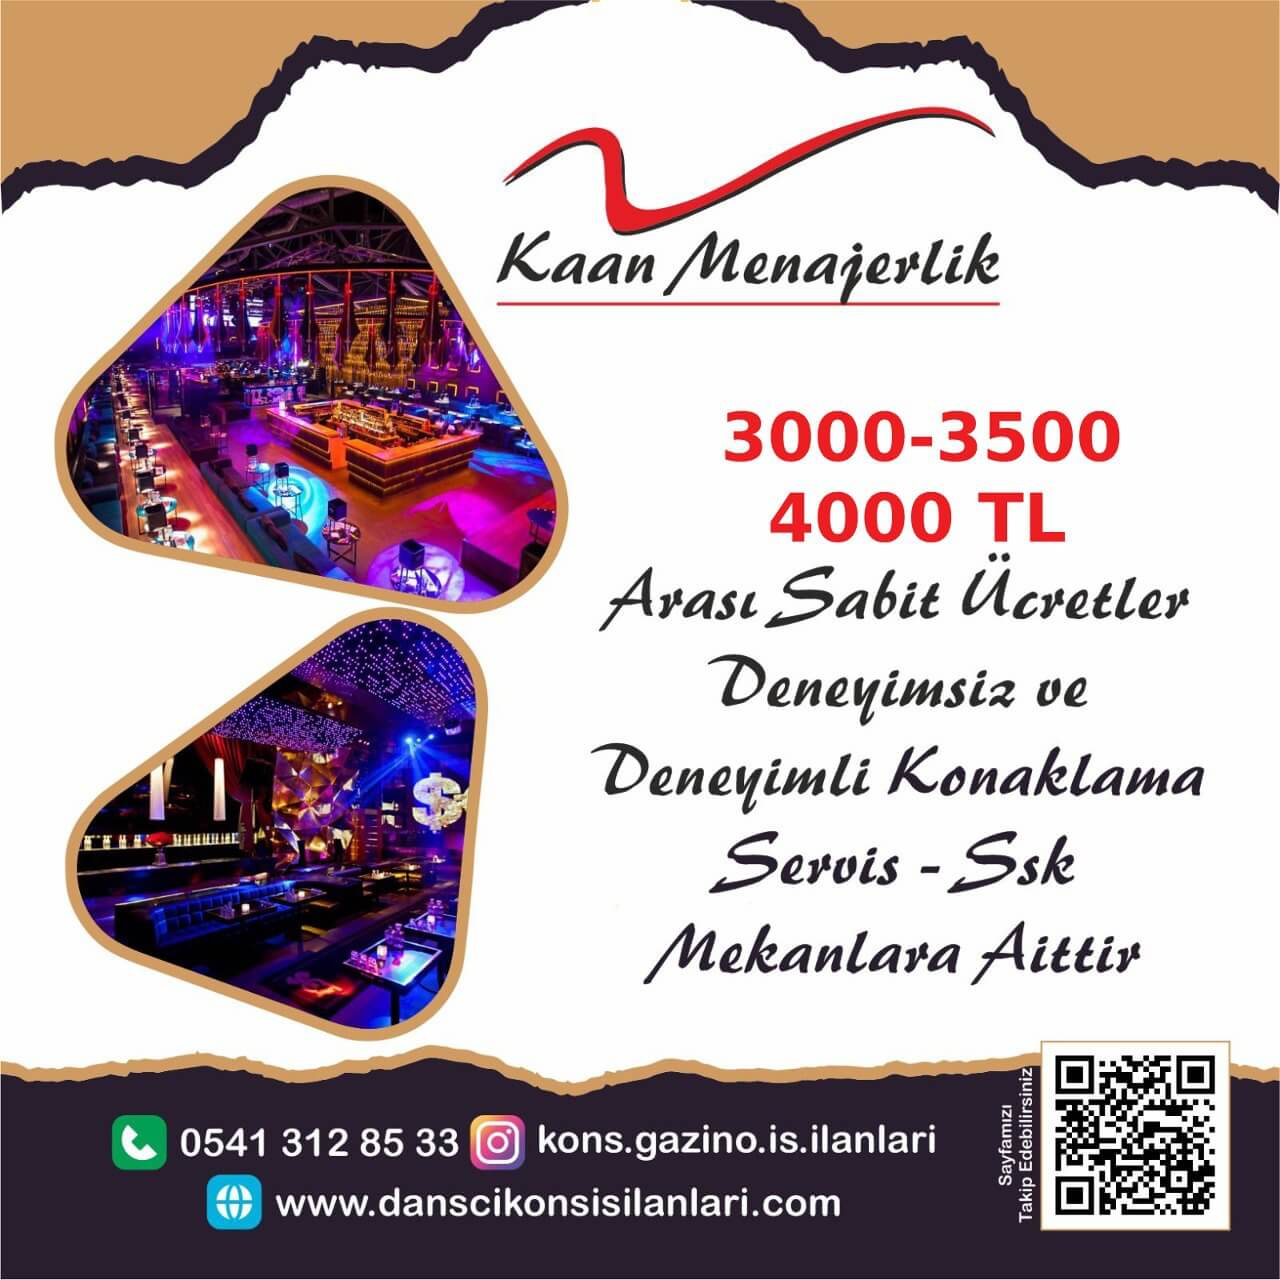 Ankara konsomatris iş ilanları gazino iş ilanı 0542 502 4989